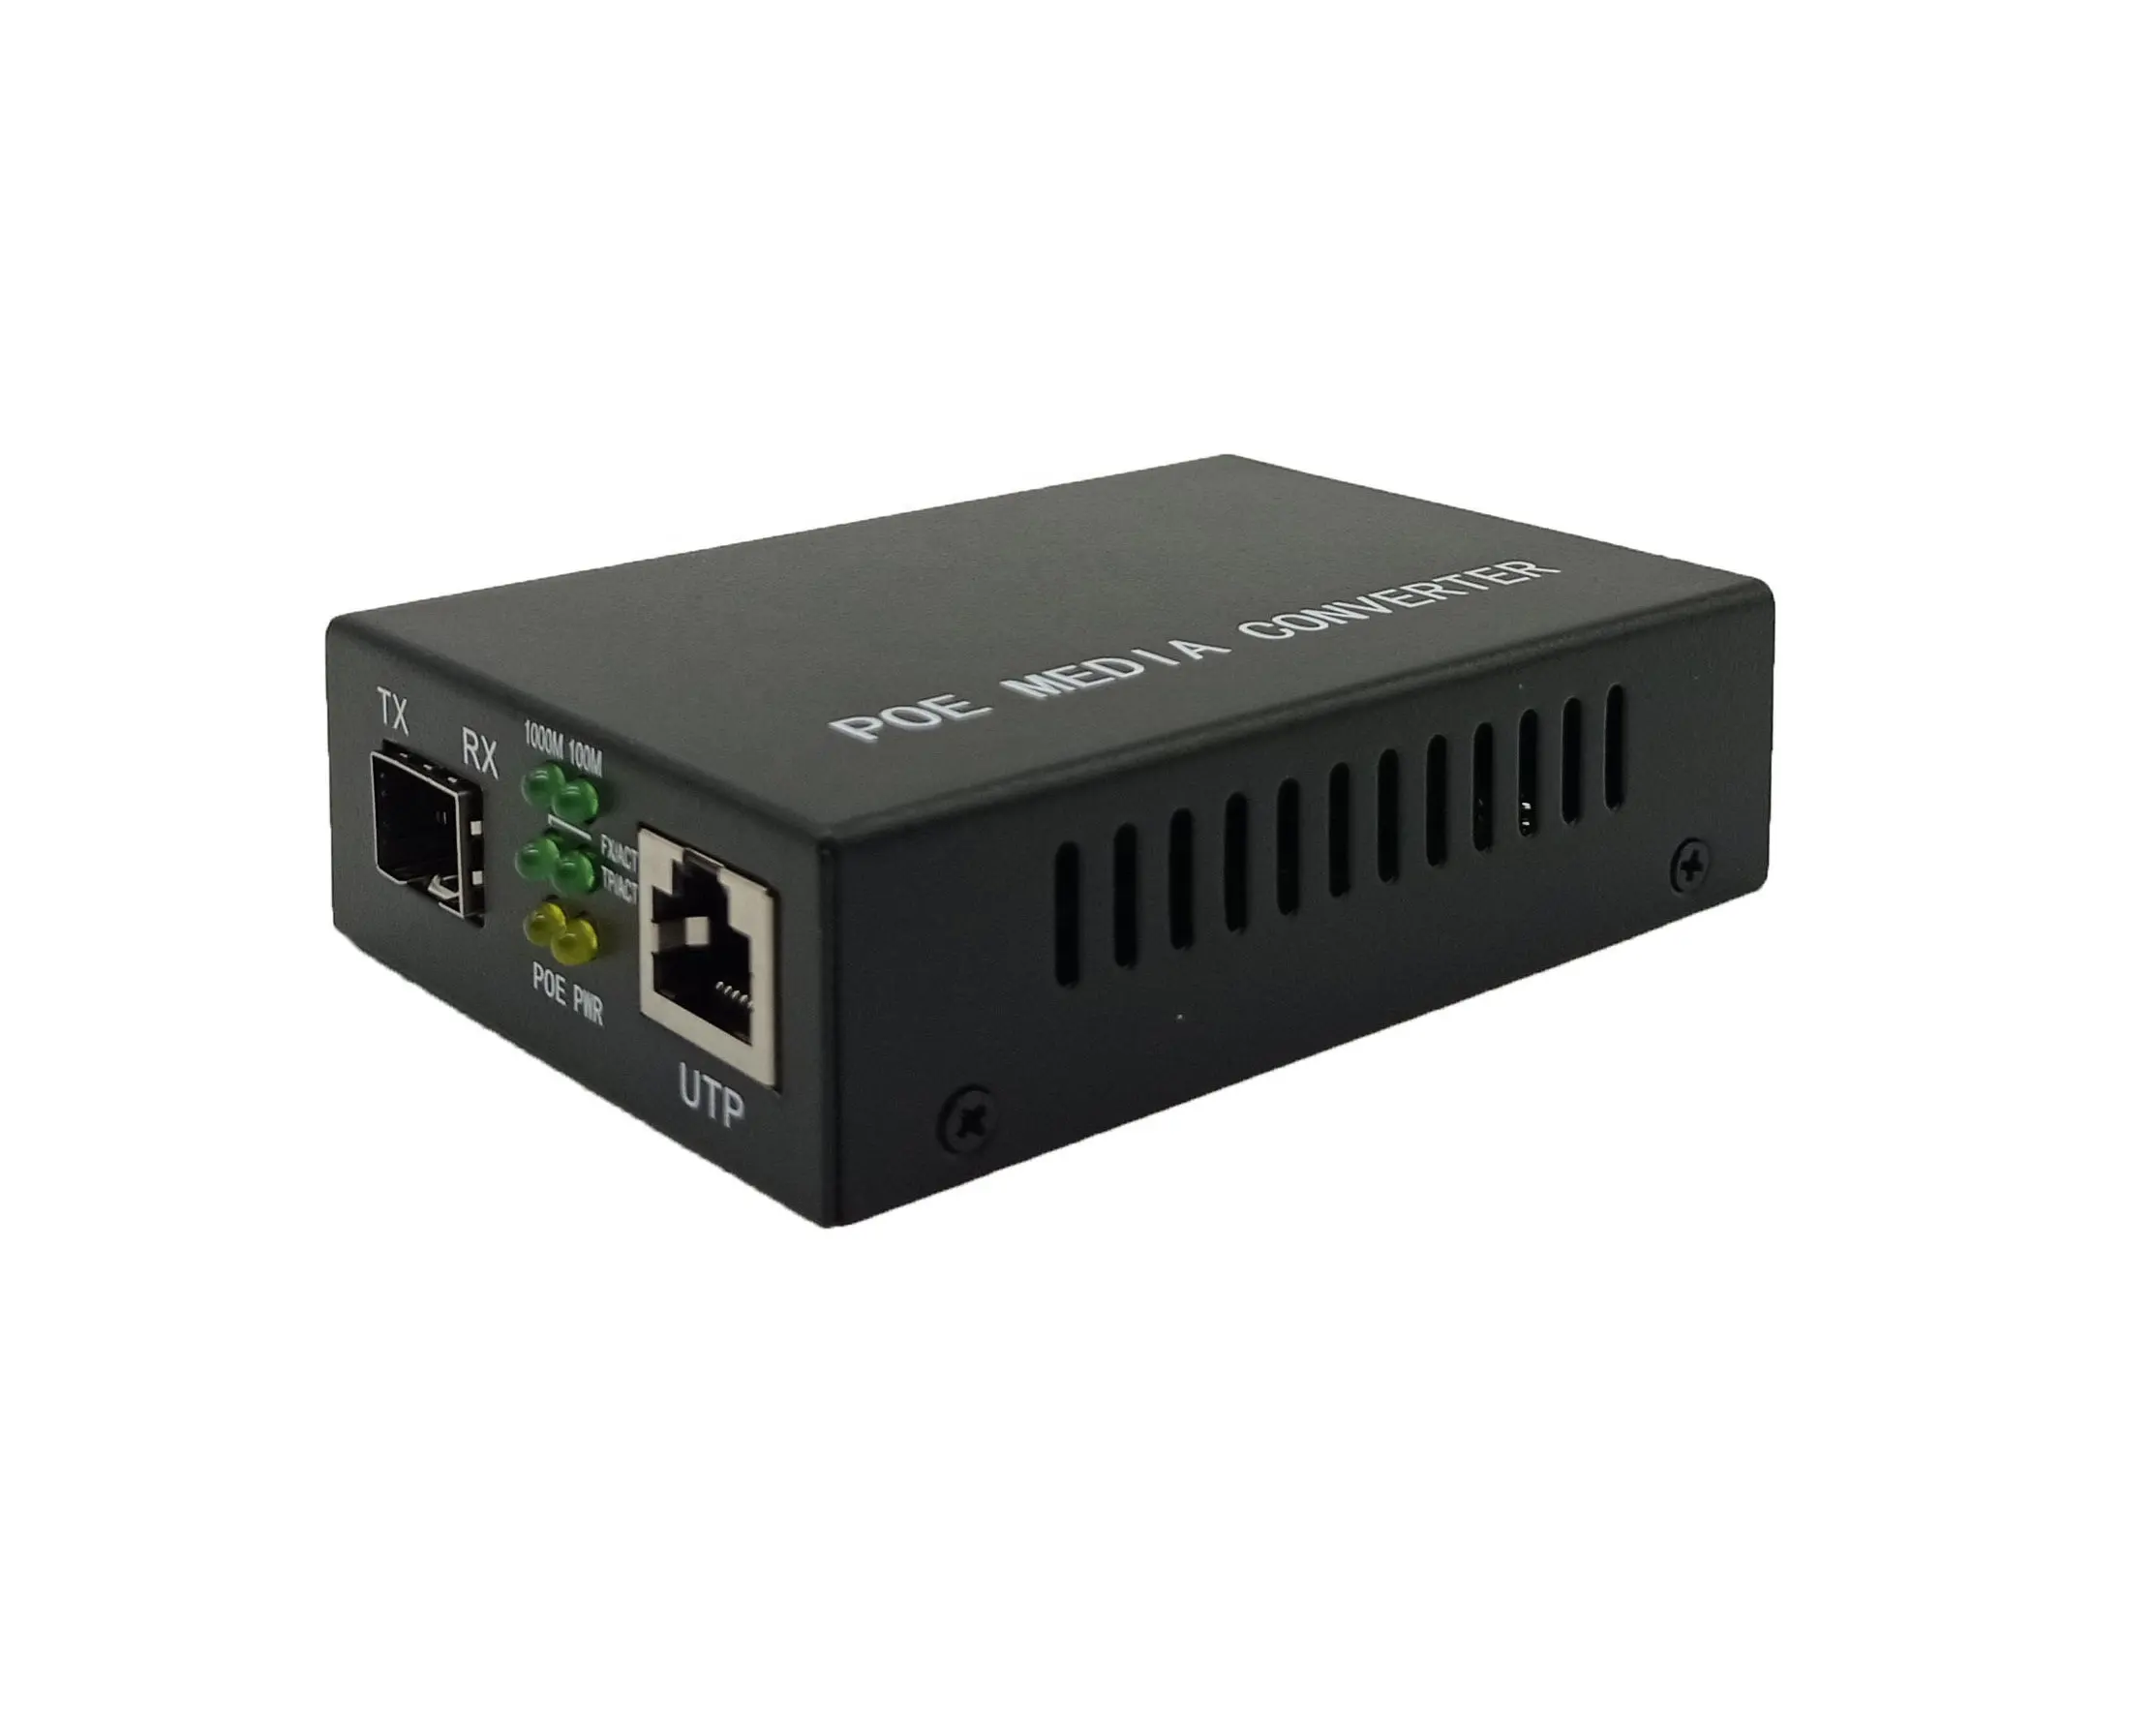 Single Port Fast Ethernet POE Fiber Optical Gigabit PoE Media Converter